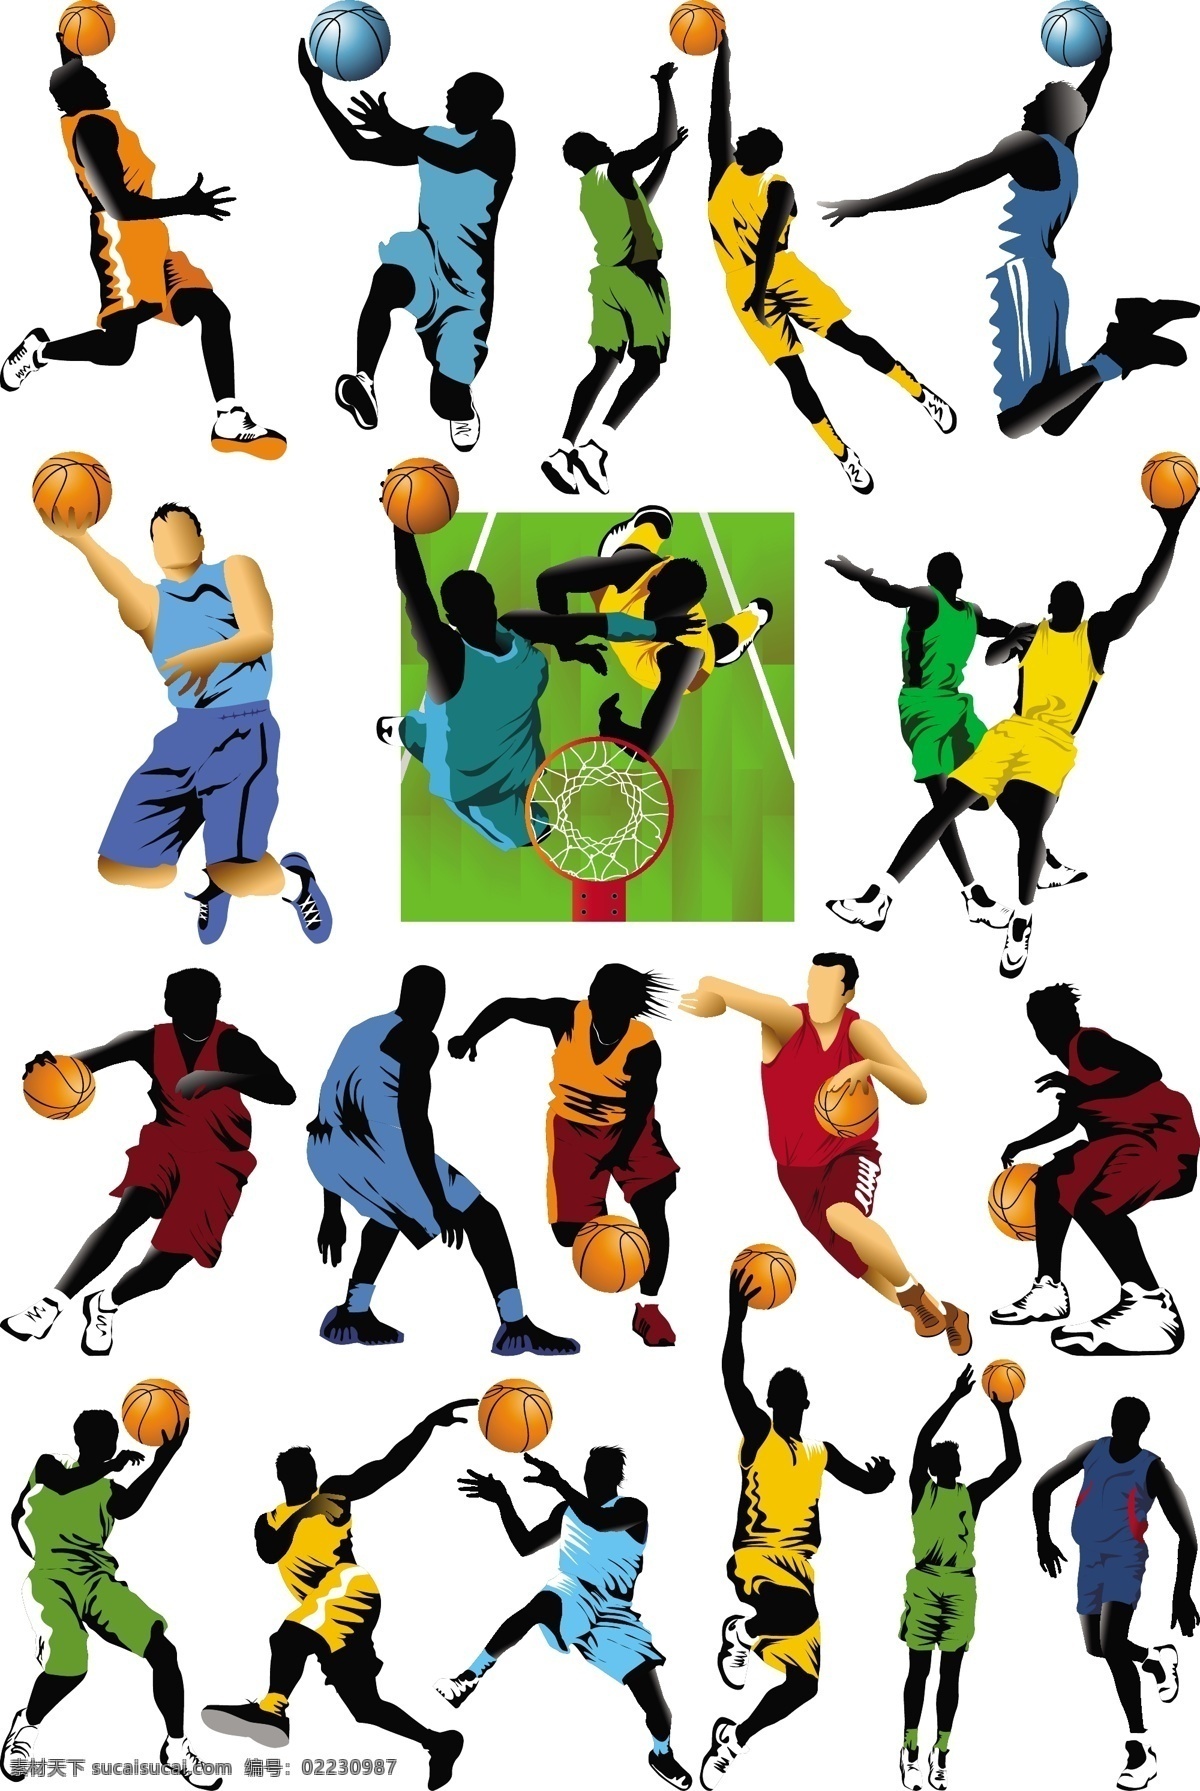 篮球运动员 篮球 打篮球 运球 跳投 投篮 扣篮 运动员 人物 剪影 体育 运动 矢量素材 职业人物 体育运动 文化艺术 矢量